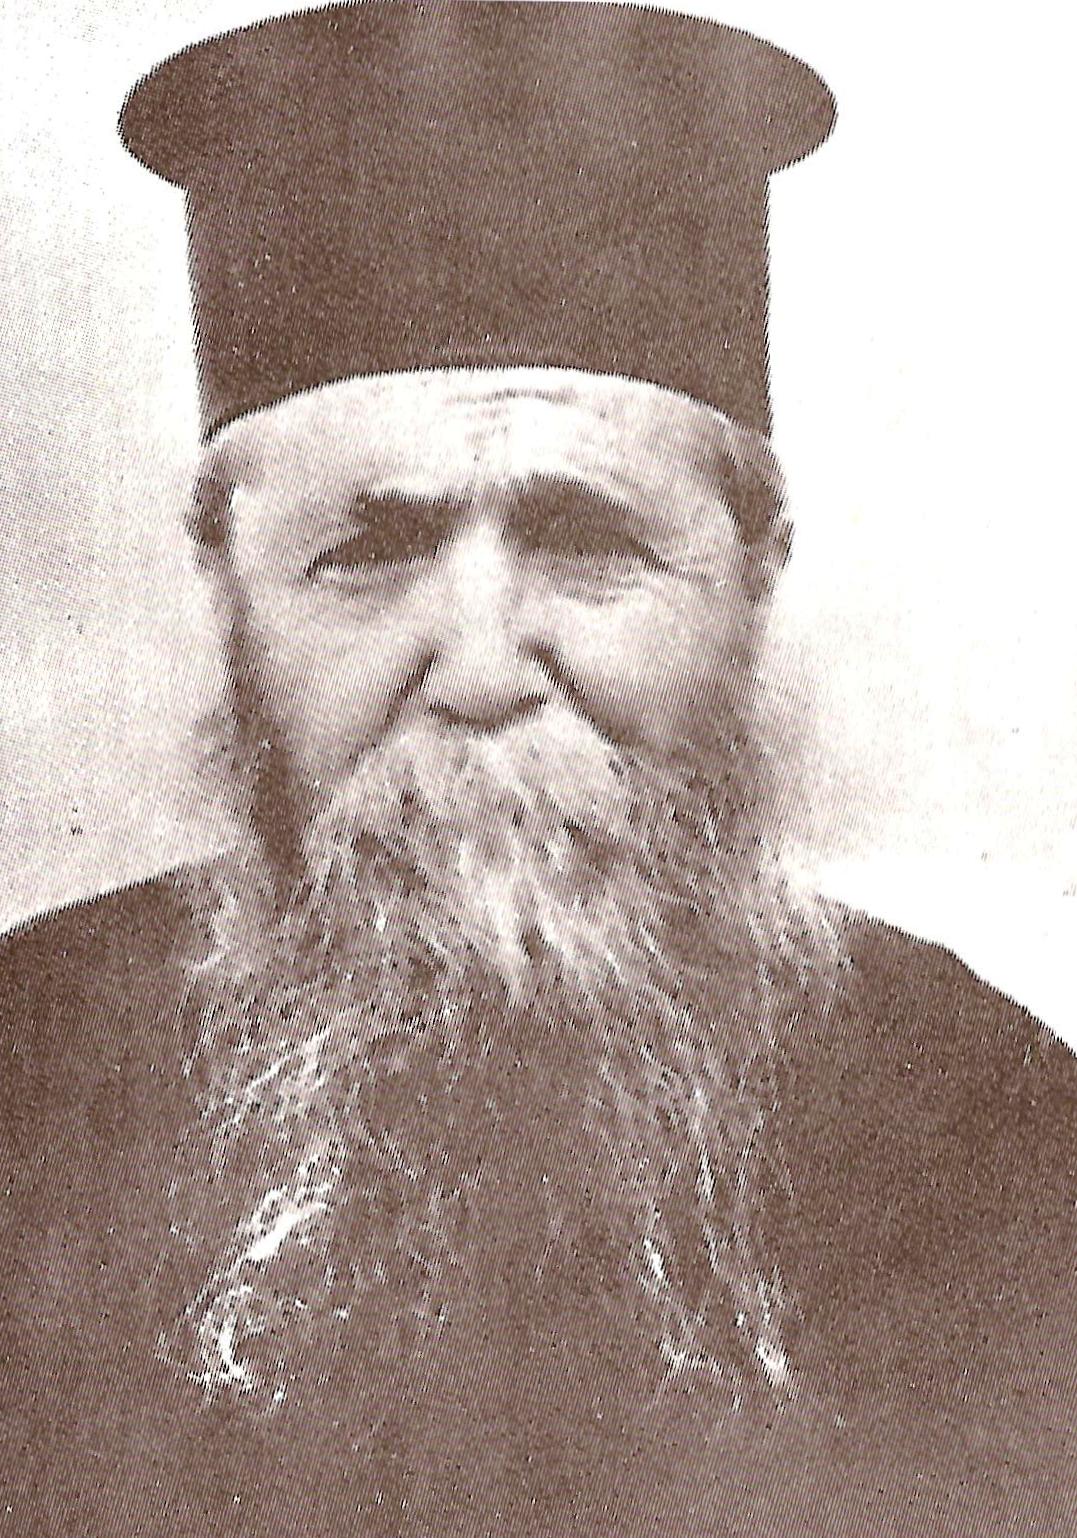 Elder Ieronymos of Aegina http://www.orthodox.net/ikons/ieronymos-elder-of-aegina.jpg